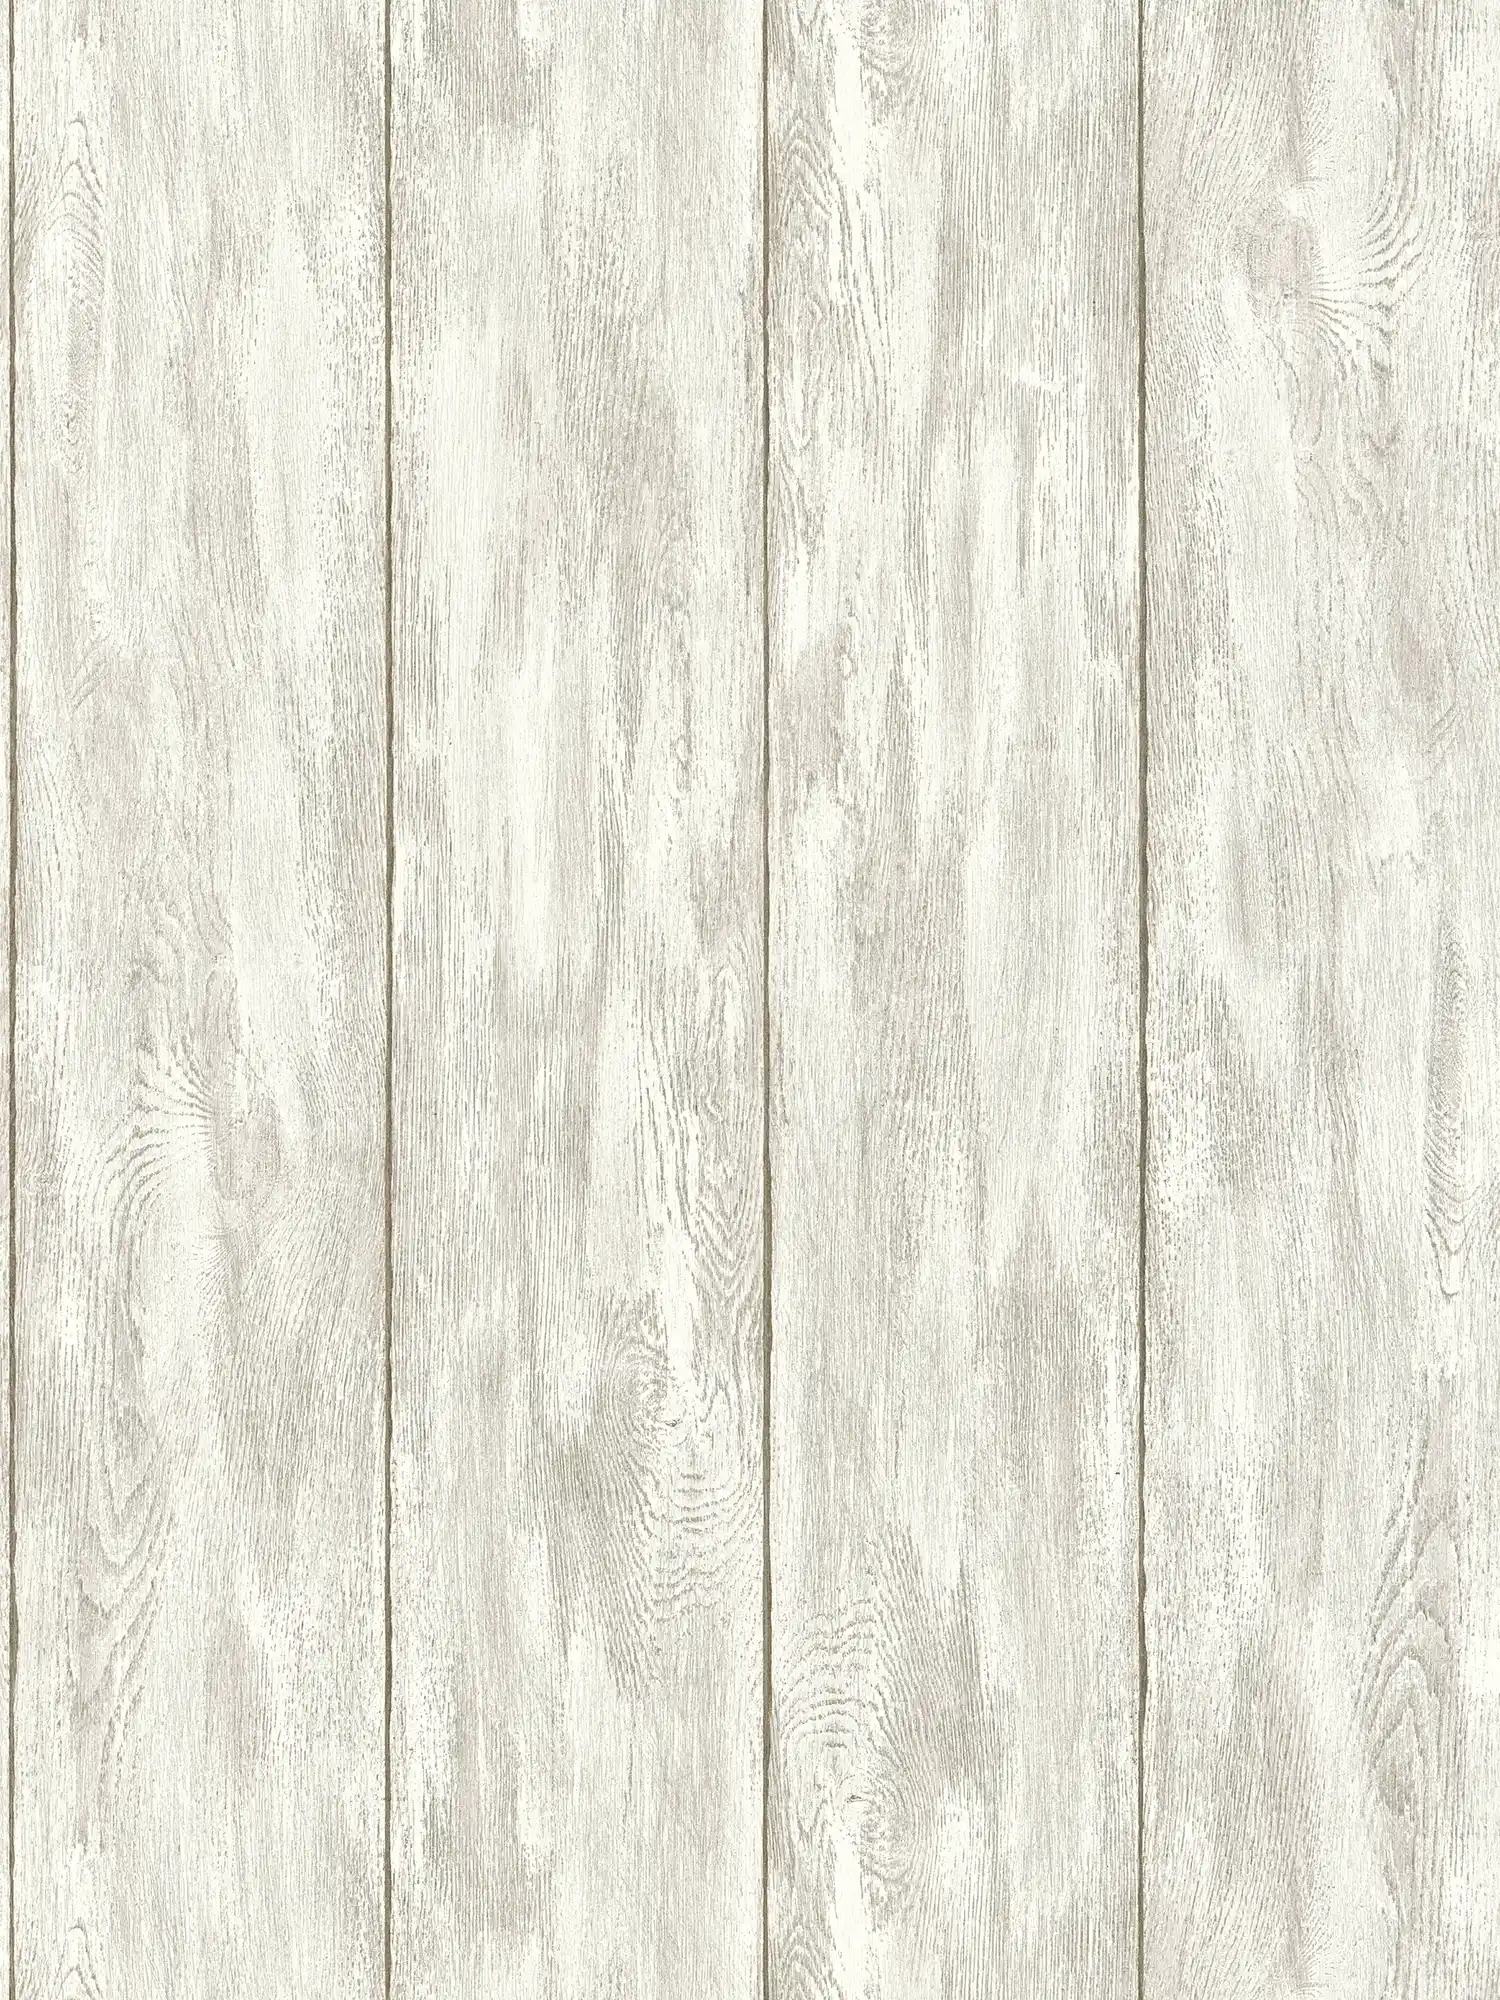 Papier peint imitation bois pour une sensation de maison de campagne confortable - beige, crème, gris
